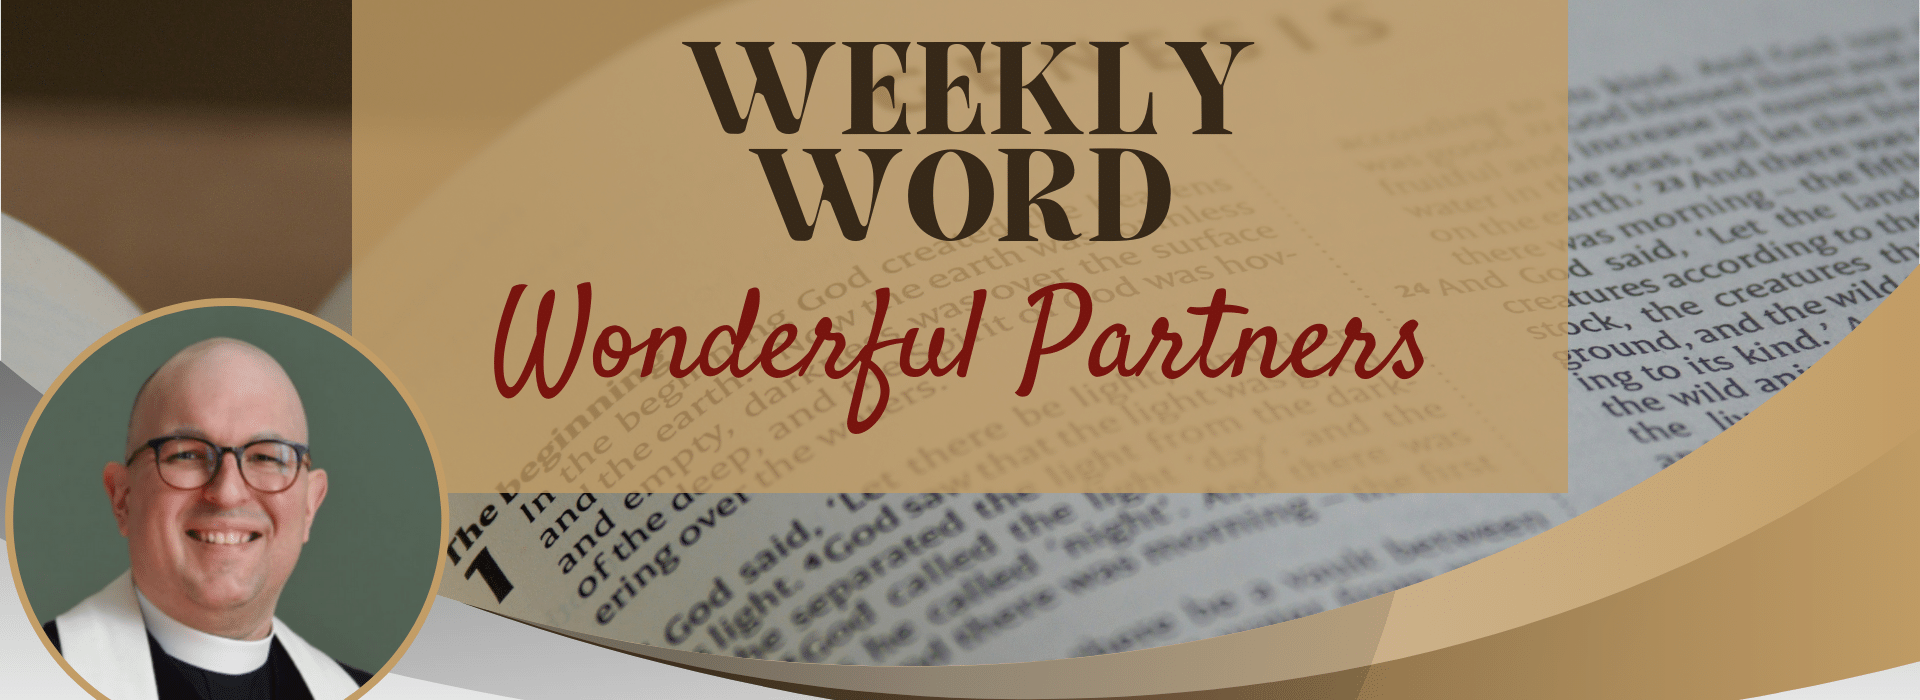 Weekly Word Wonderful Partners